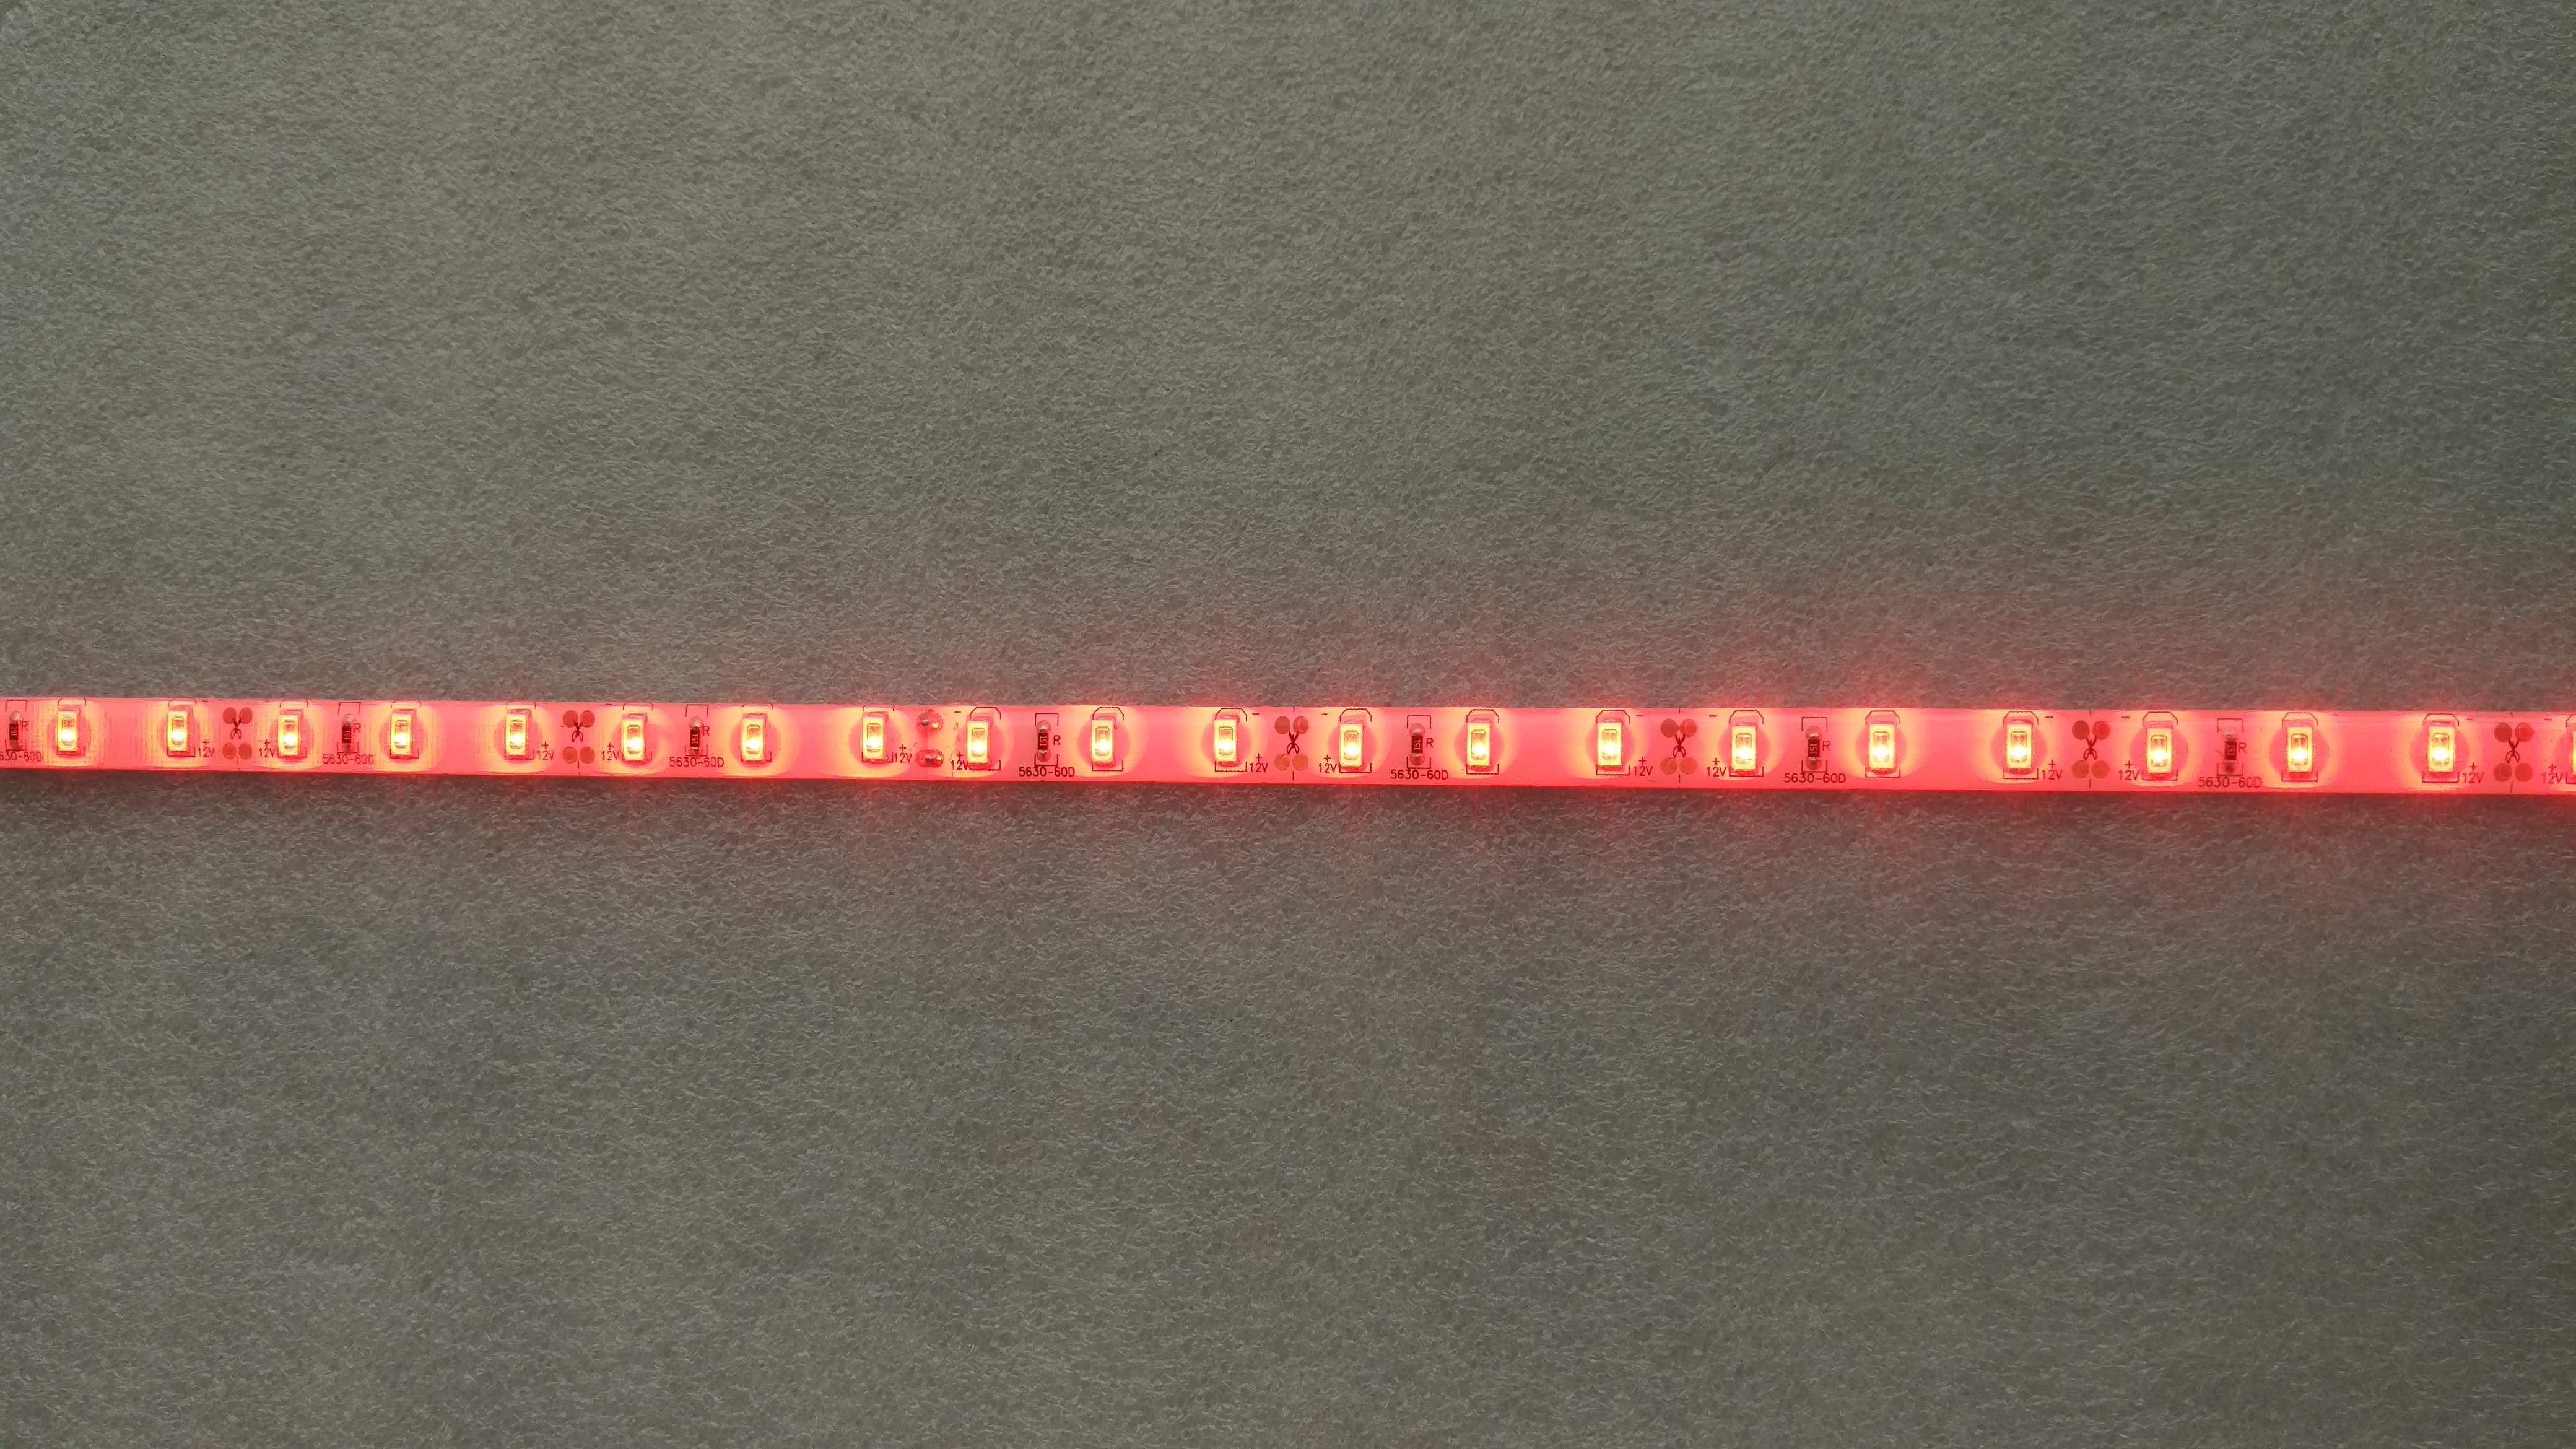 12V 5 meters 300 LEDs IP65 waterproof SMD 5630 5730 red light LED strip